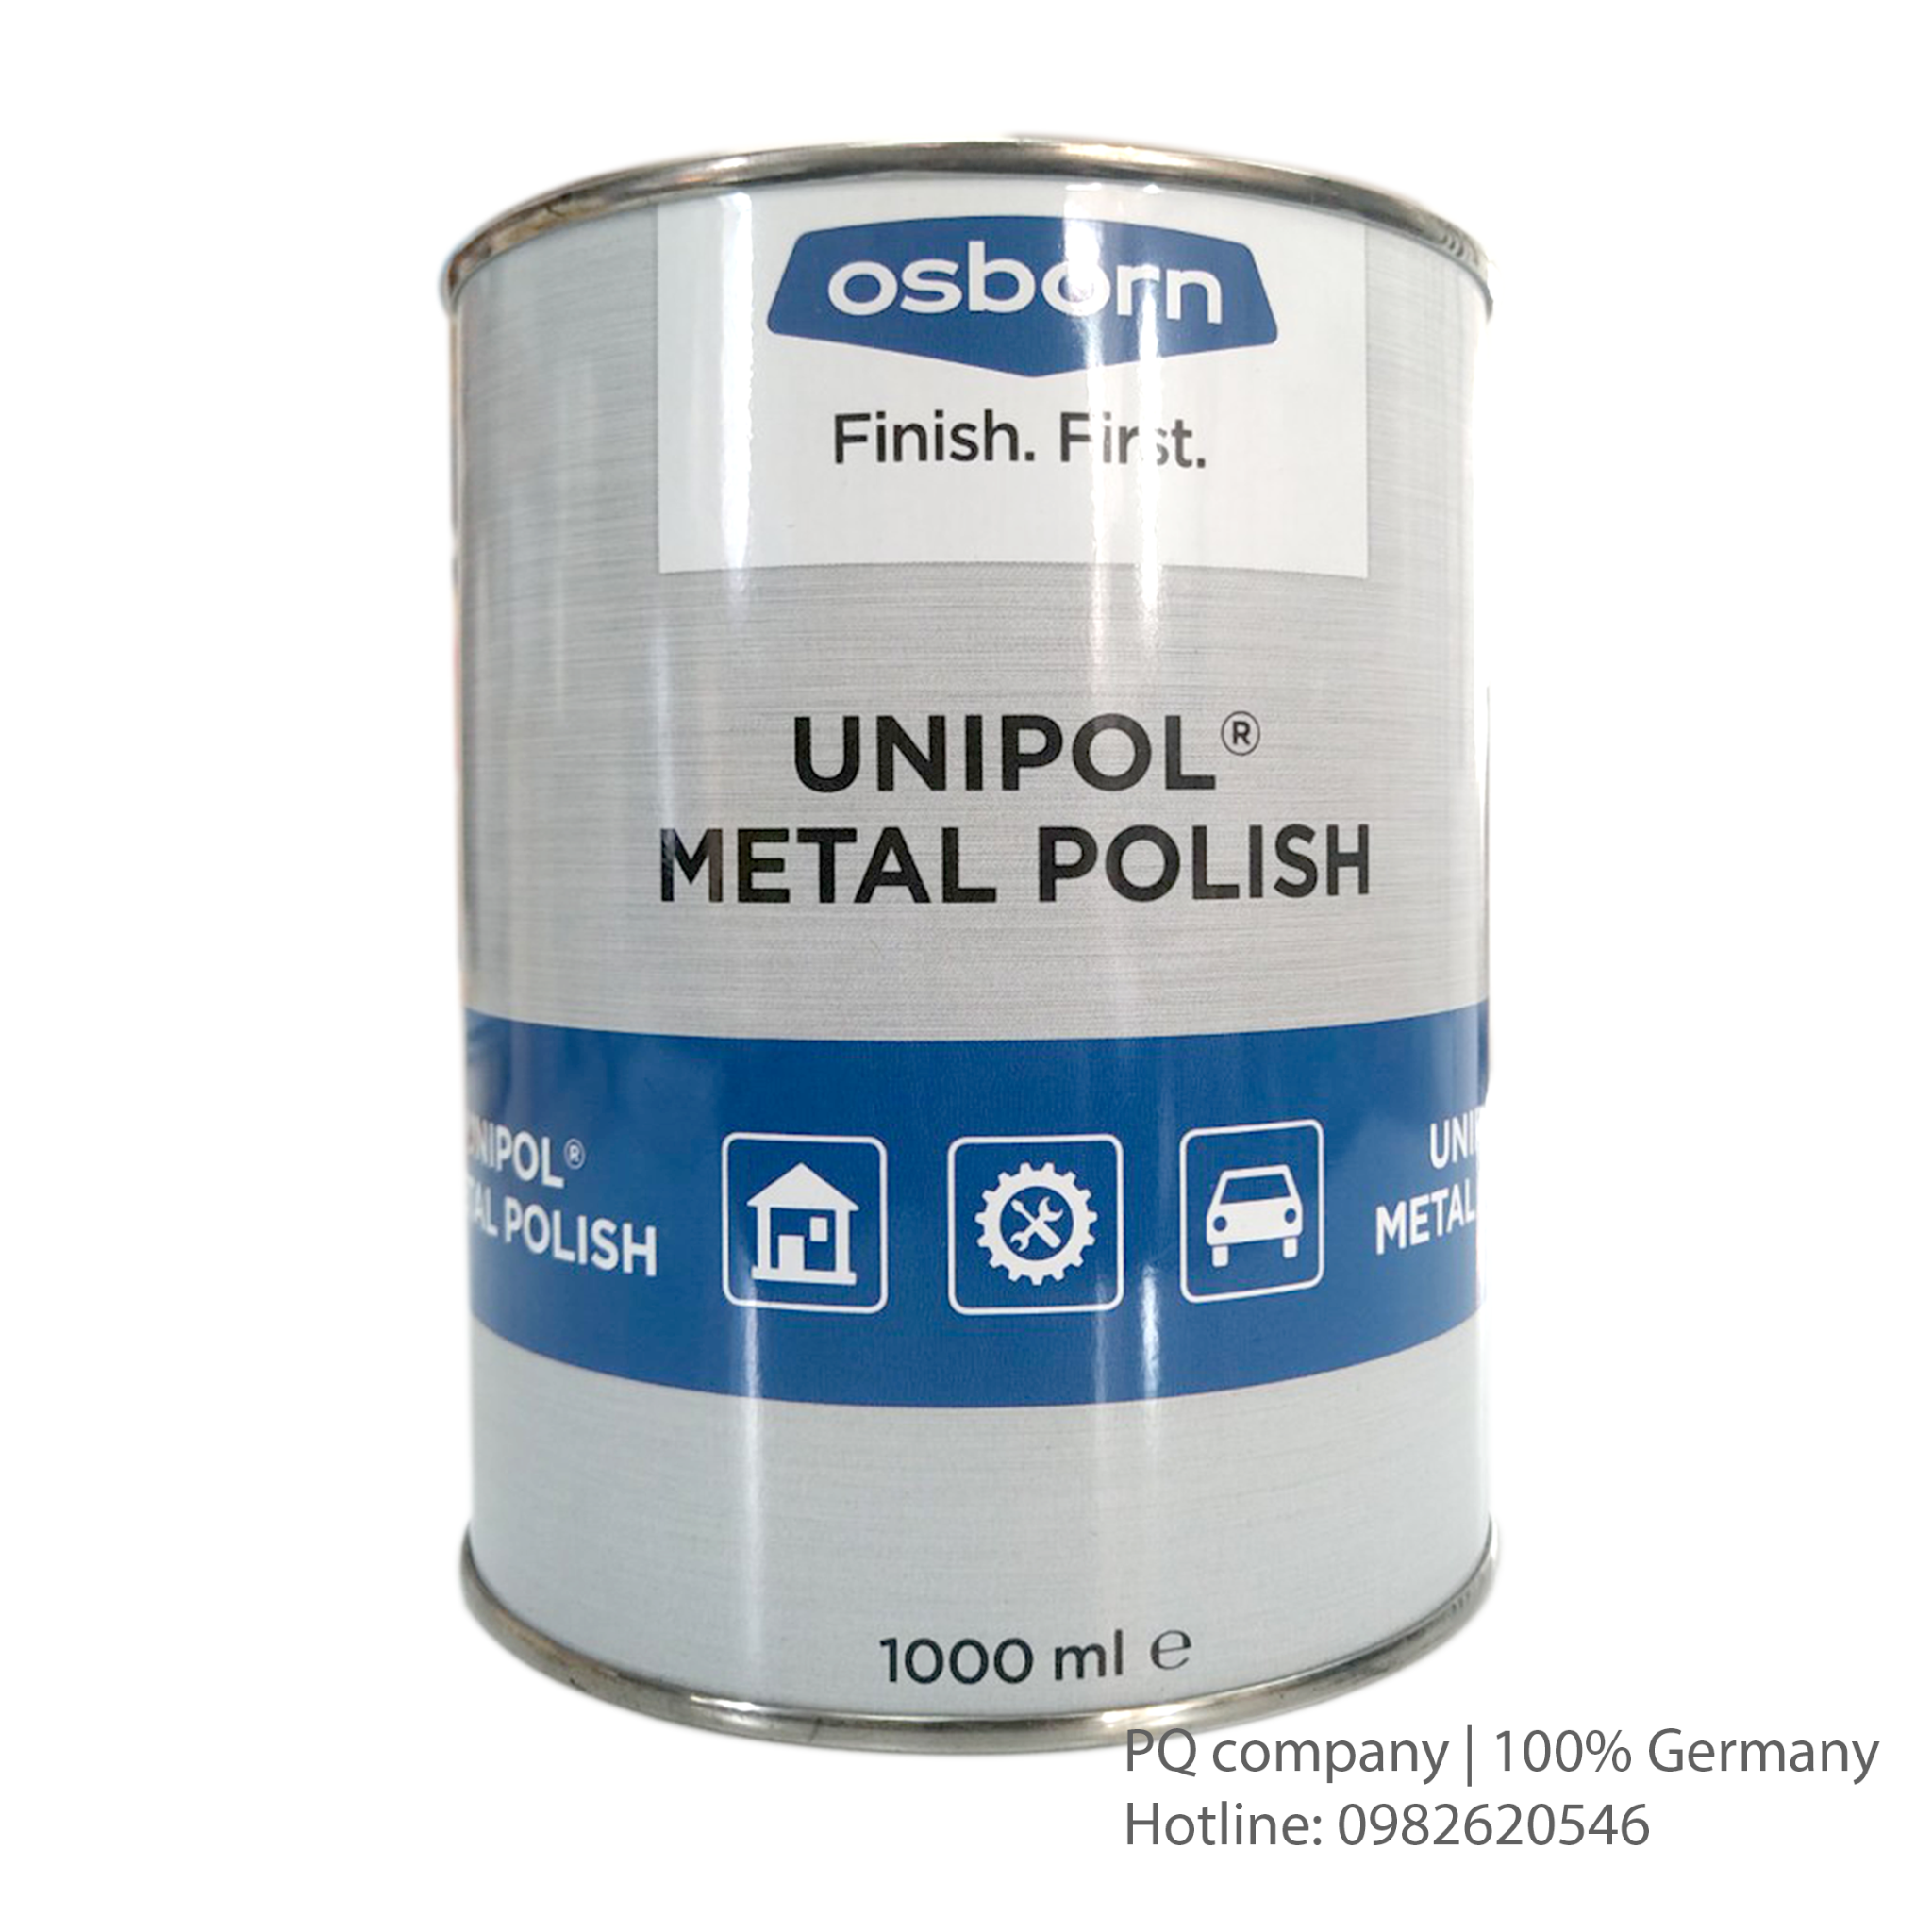 Kem Đánh Bóng Kim Loại Unipol Made in Germany. Code: 3.10.100.1007 | www.thietbinhapkhau.com | Công ty PQ 